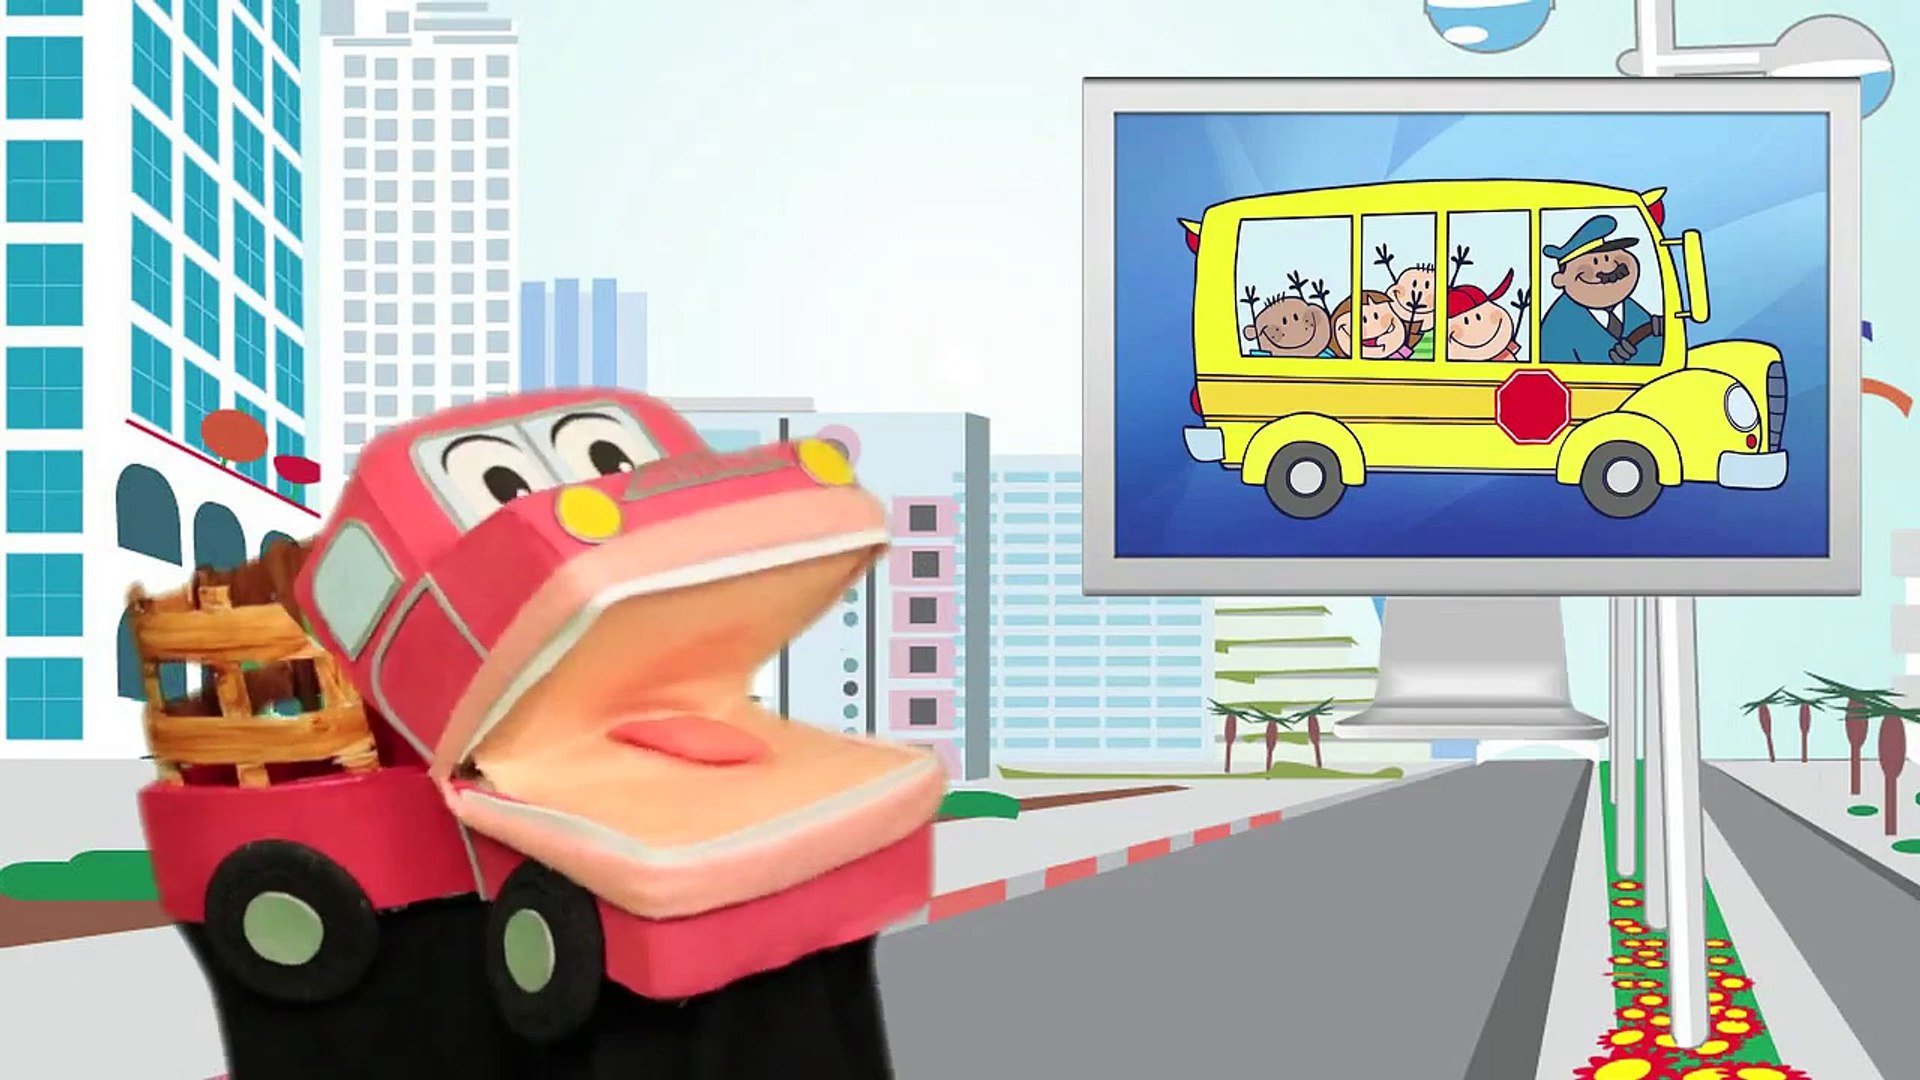 Arriba, Abajo, Derecha, Izquierda - Barney El Camion - Canciones Infantiles  - Video para niños # - video Dailymotion